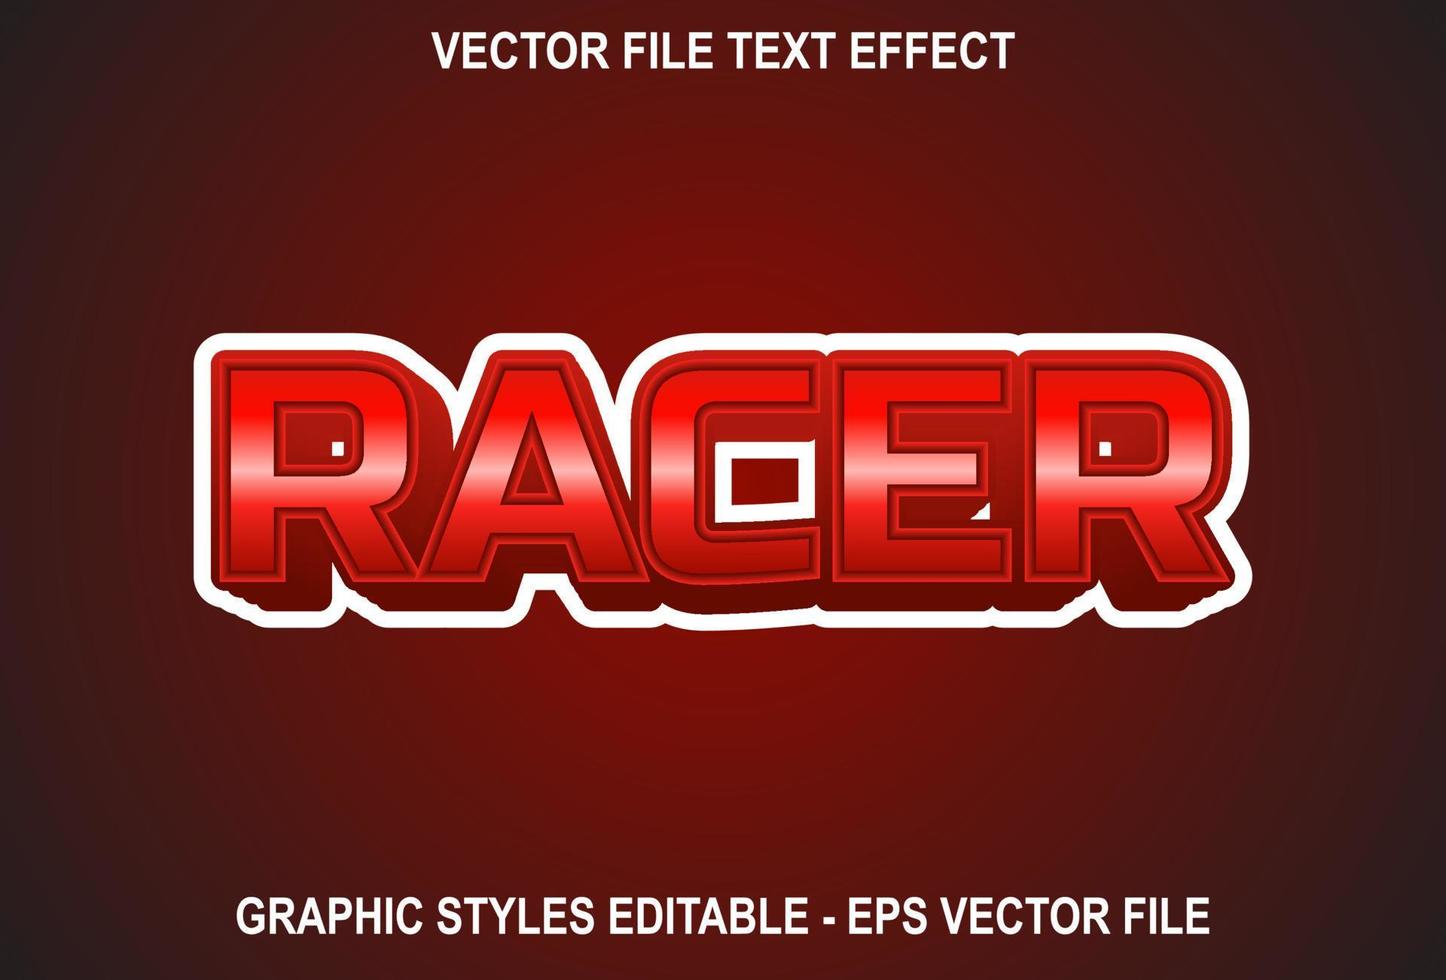 racer-teksteffect met rode kleur. teksteffectontwerp in sportstijl. vector